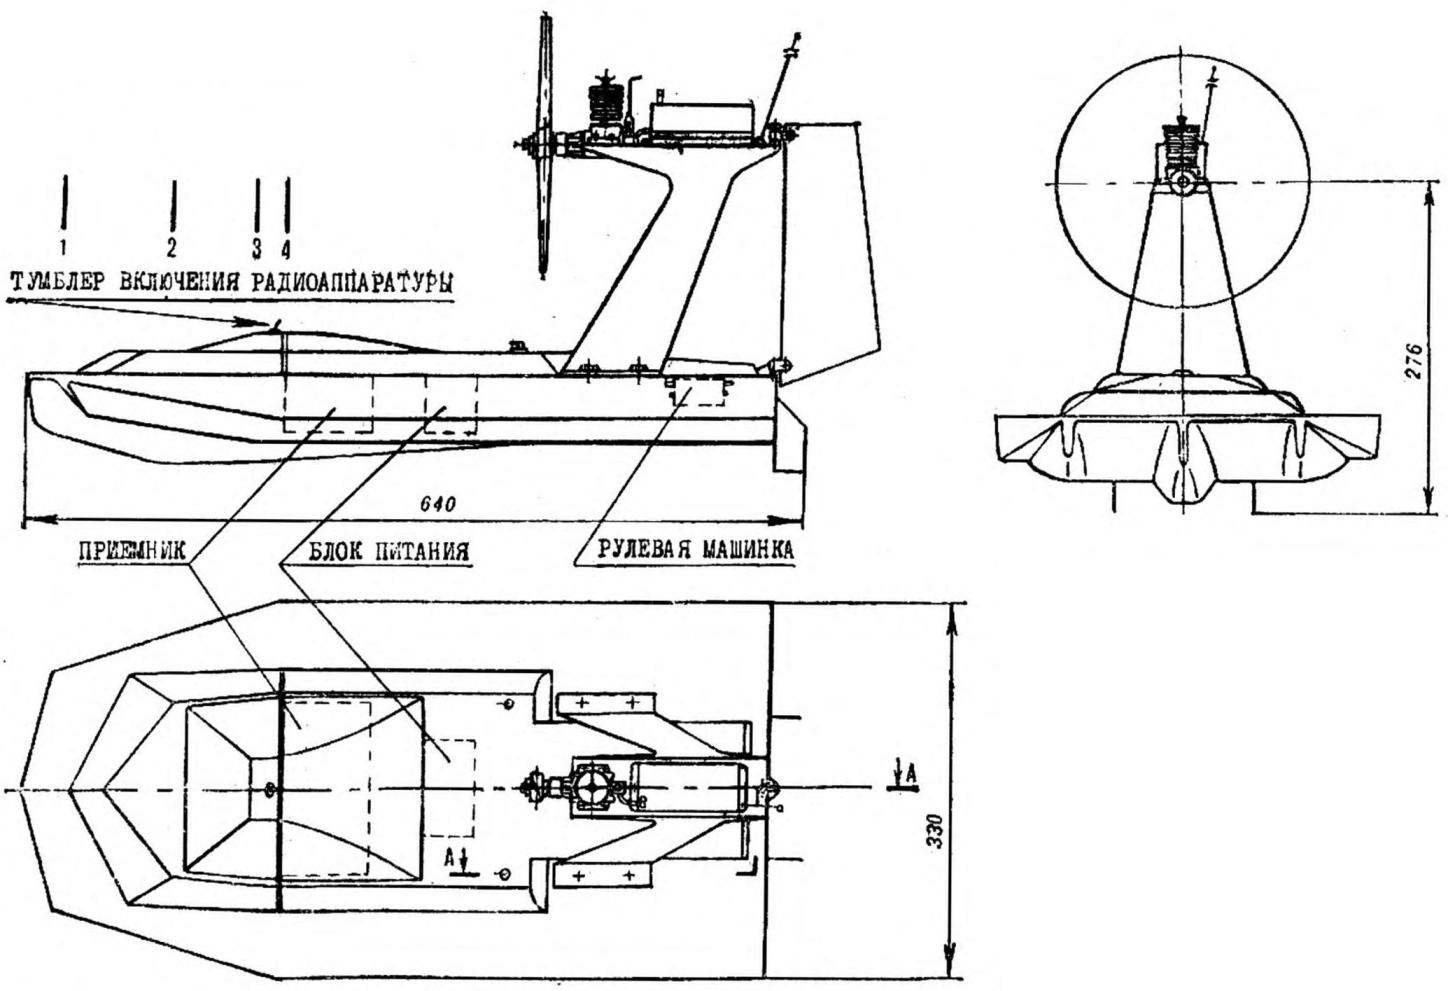 Fig. 1. Training model shaped course aerolizer.